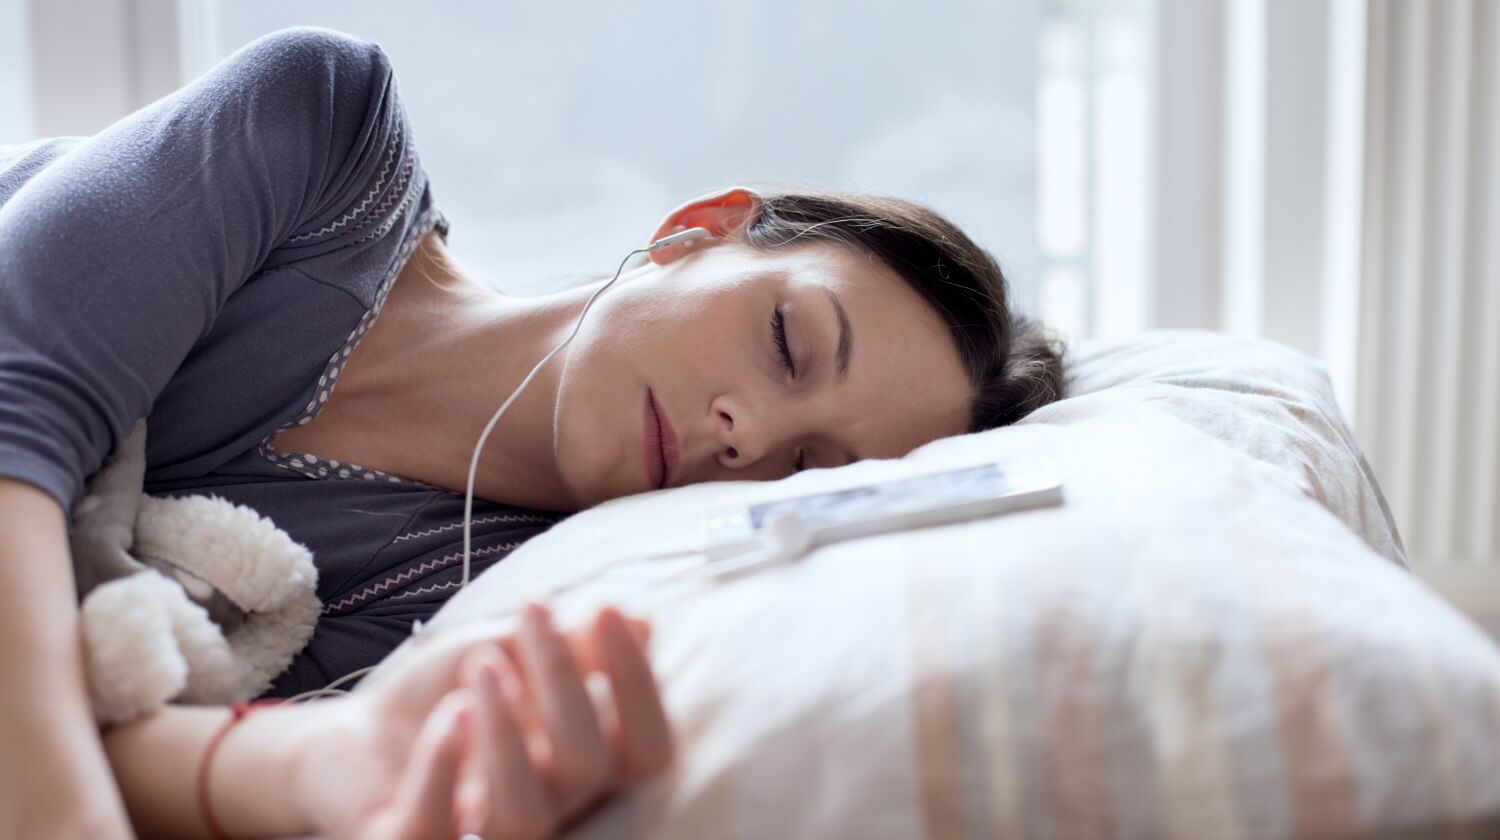 dùng tai nghe để nghe nhạc trước khi ngủ